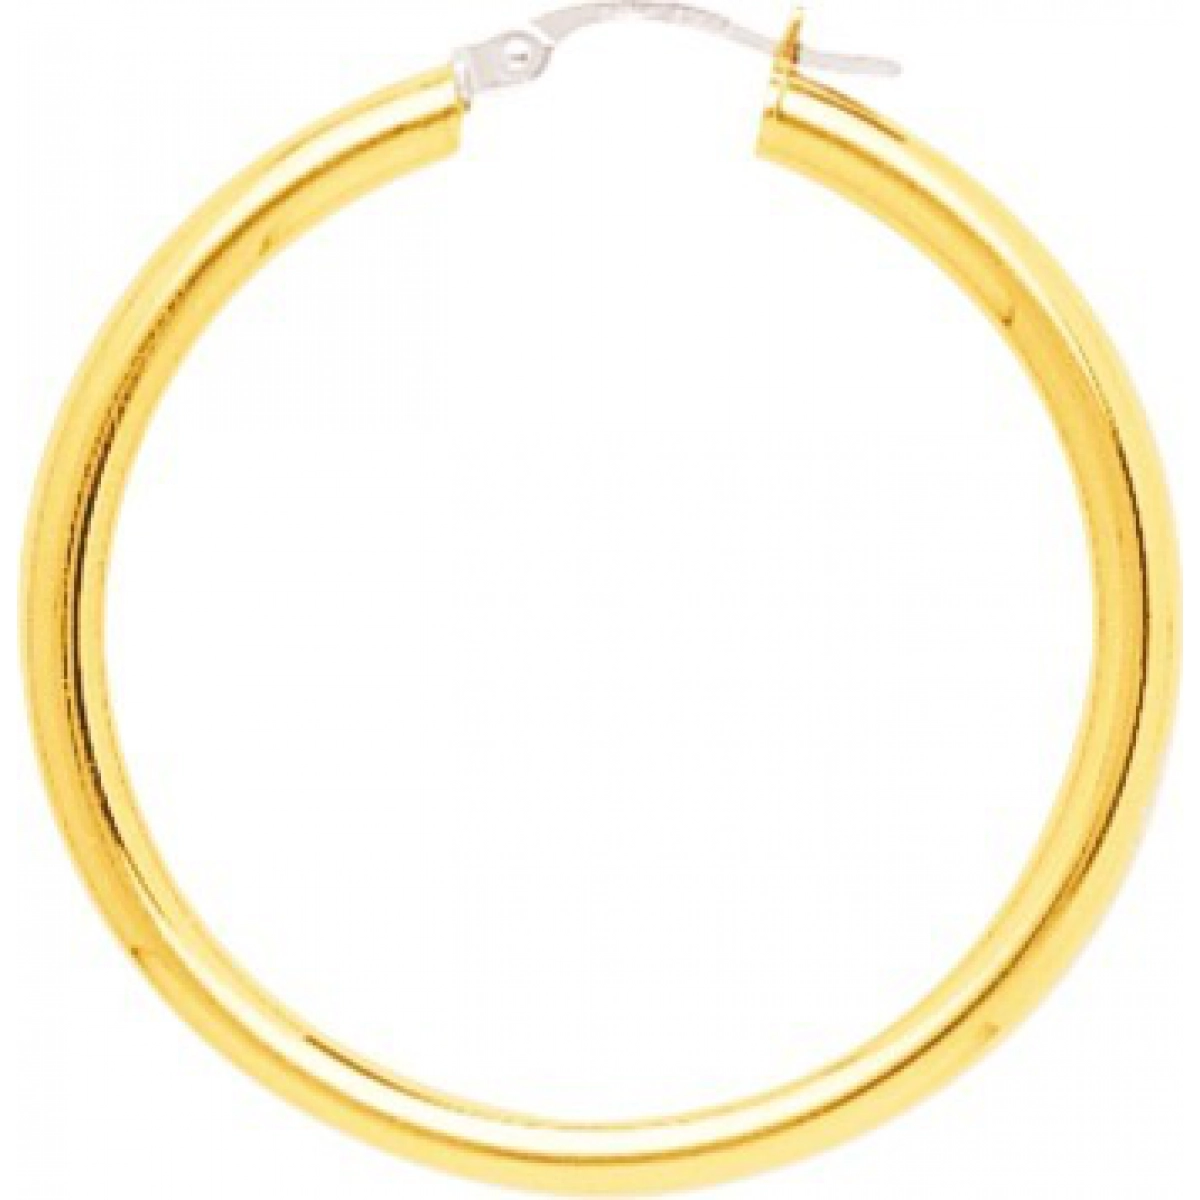 Hoops earrings pair plain 9K YG  Lua Blanca  650068.7.0